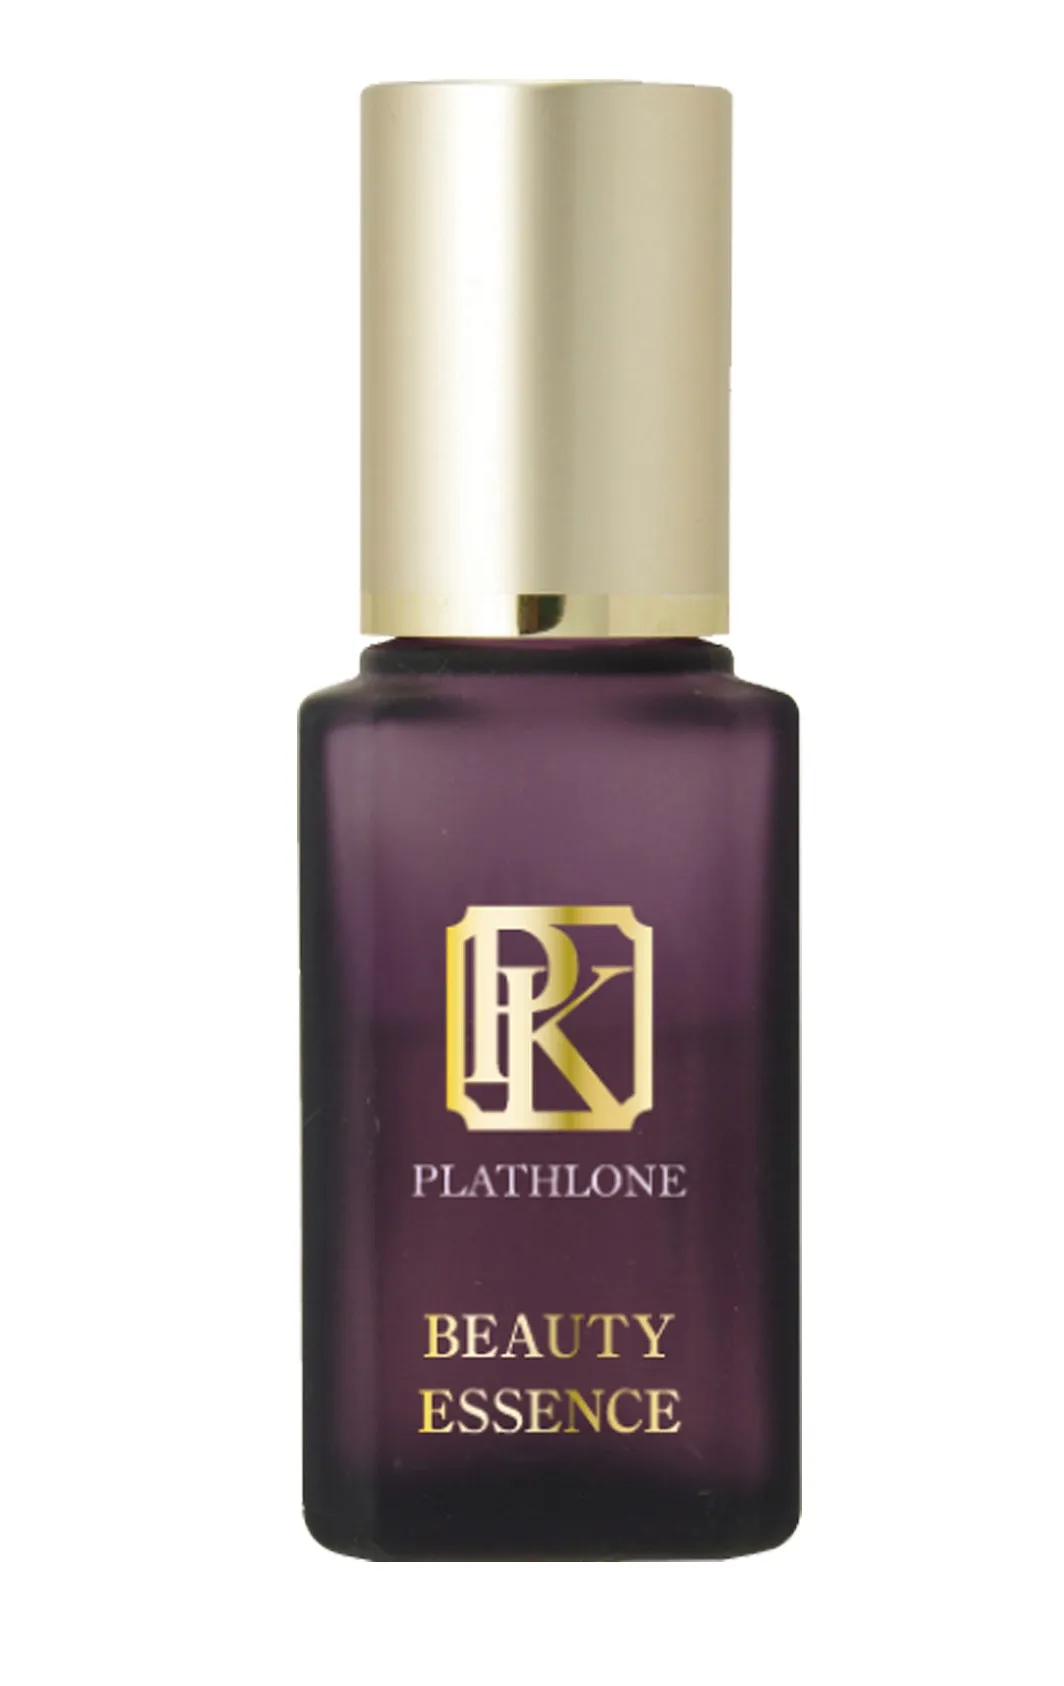 Сыворотка красоты восстанавливающая защитные свойства кожи  Beauty Essence Plasthlone